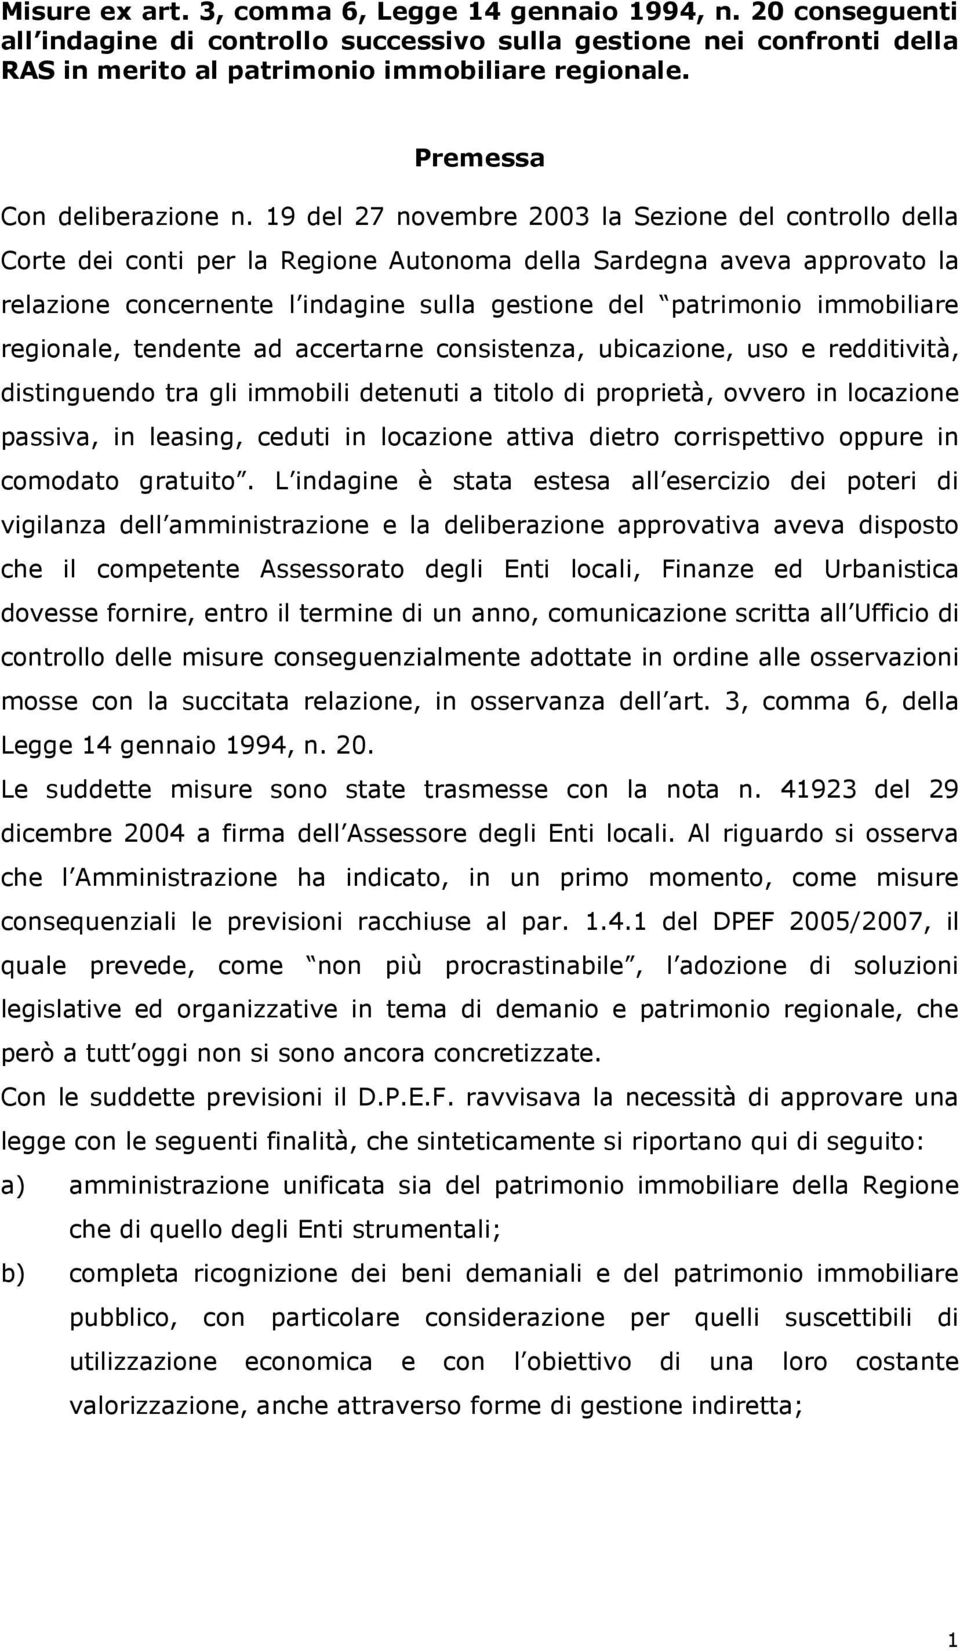 19 del 27 novembre 2003 la Sezione del controllo della Corte dei conti per la Regione Autonoma della Sardegna aveva approvato la relazione concernente l indagine sulla gestione del patrimonio